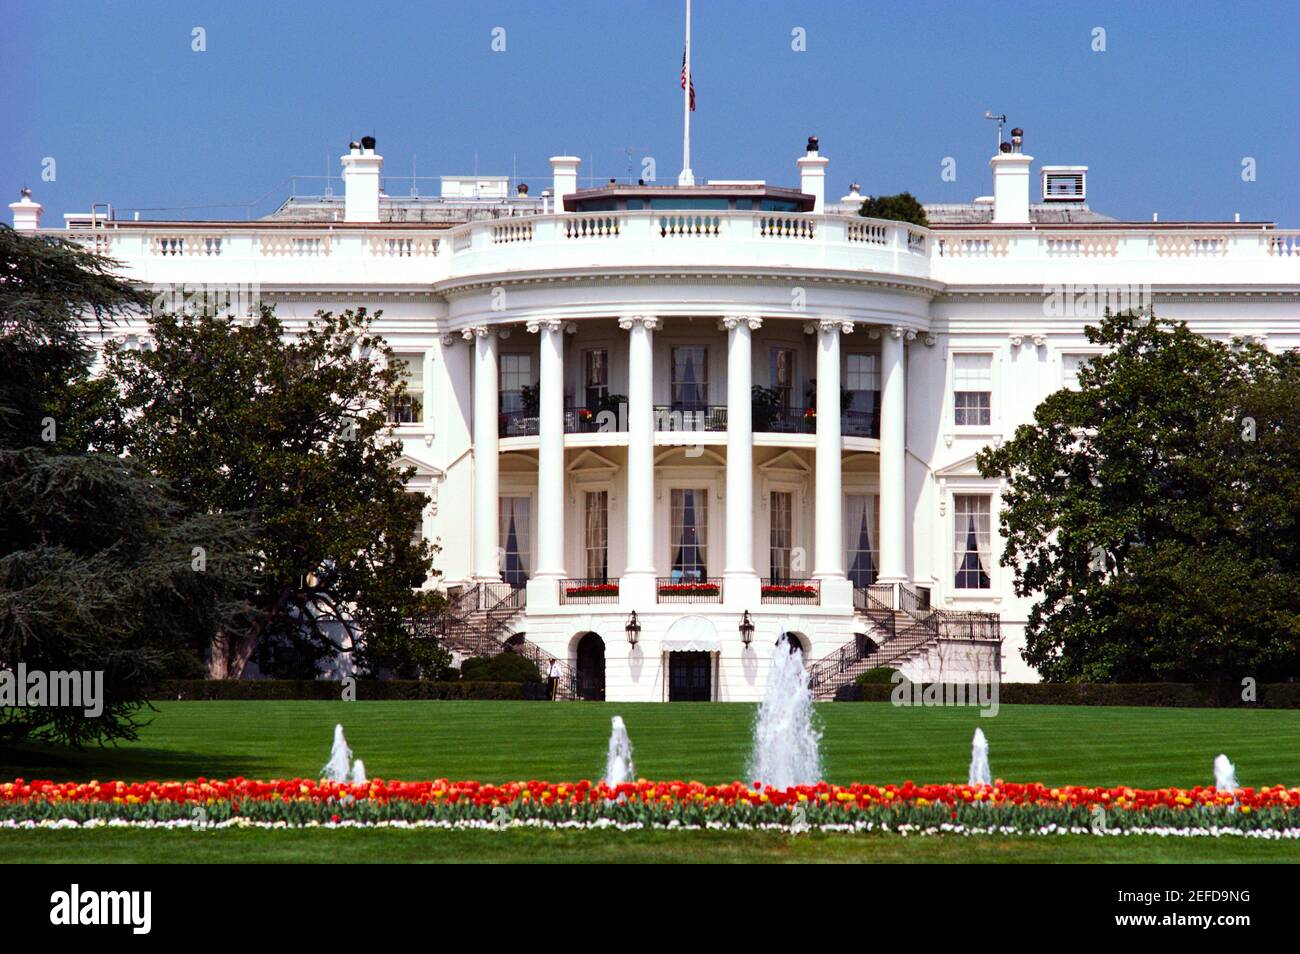 Façade d'un bâtiment public, Maison Blanche, Washington DC, USA Banque D'Images